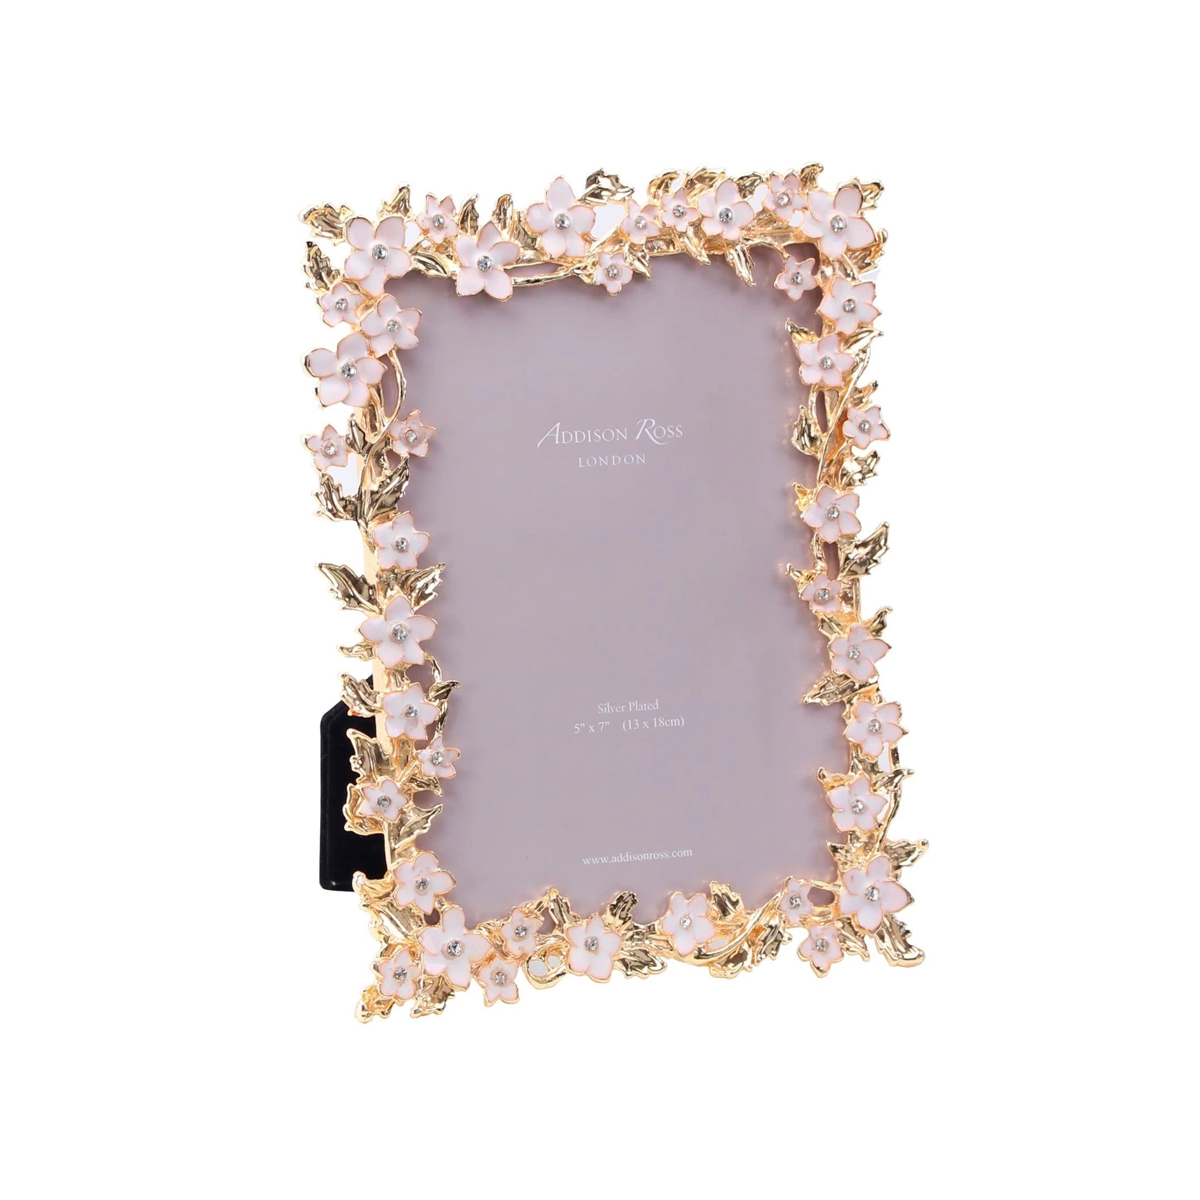 Addison Ross - White Flower & Gold 5x7 Frame